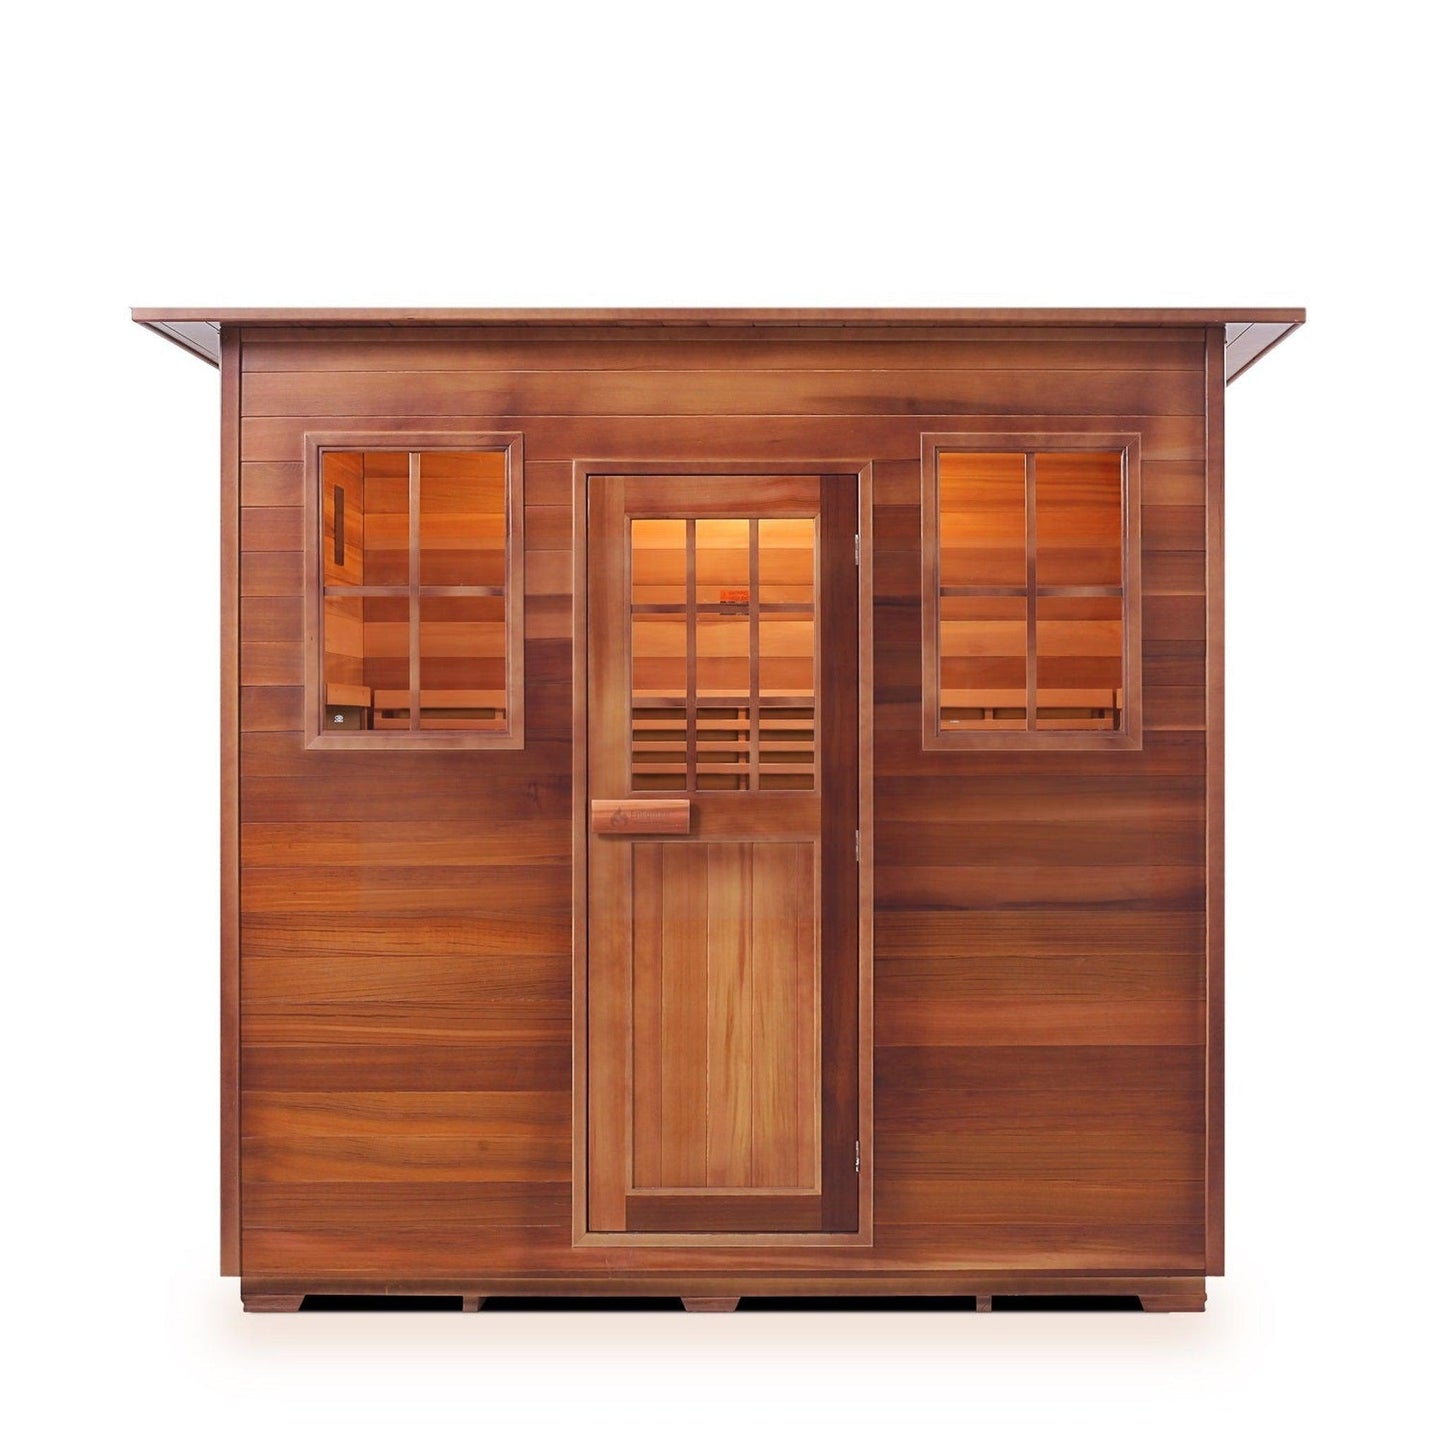 Enlighten SaunaTerra MoonLight 5-Person Dry Traditional Indoor Sauna